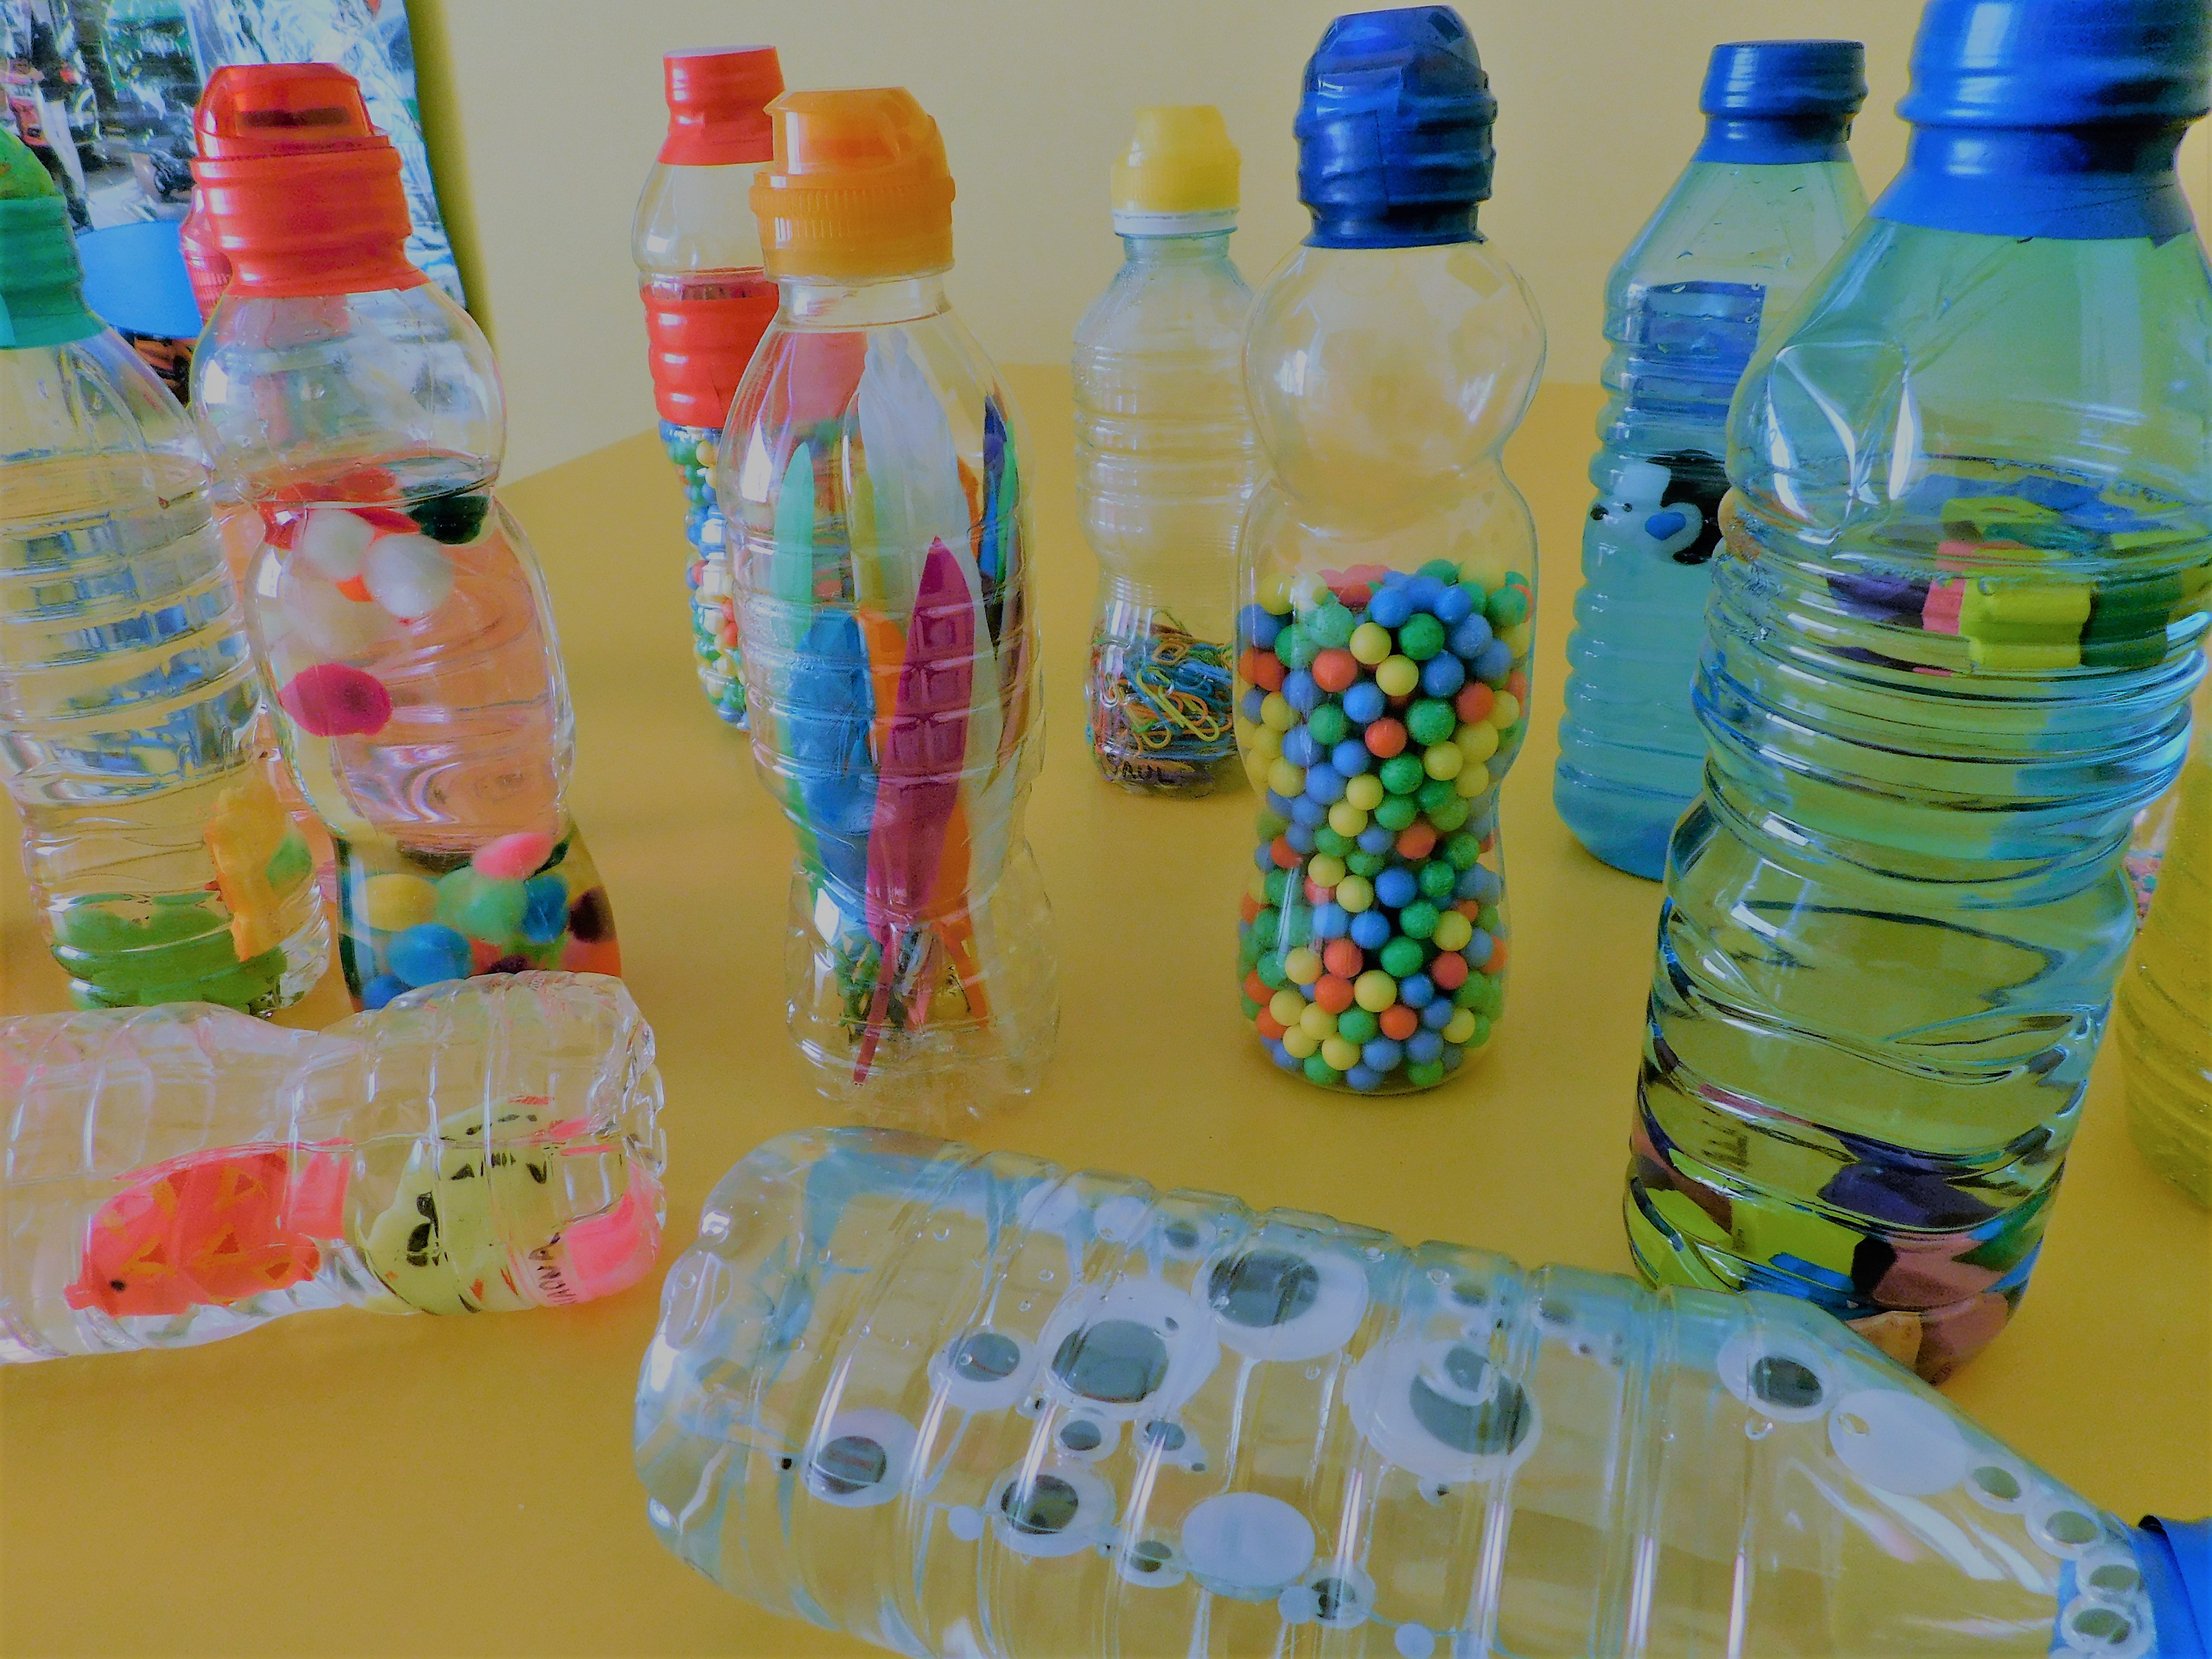 Botellas sensoriales – Educación Infantil